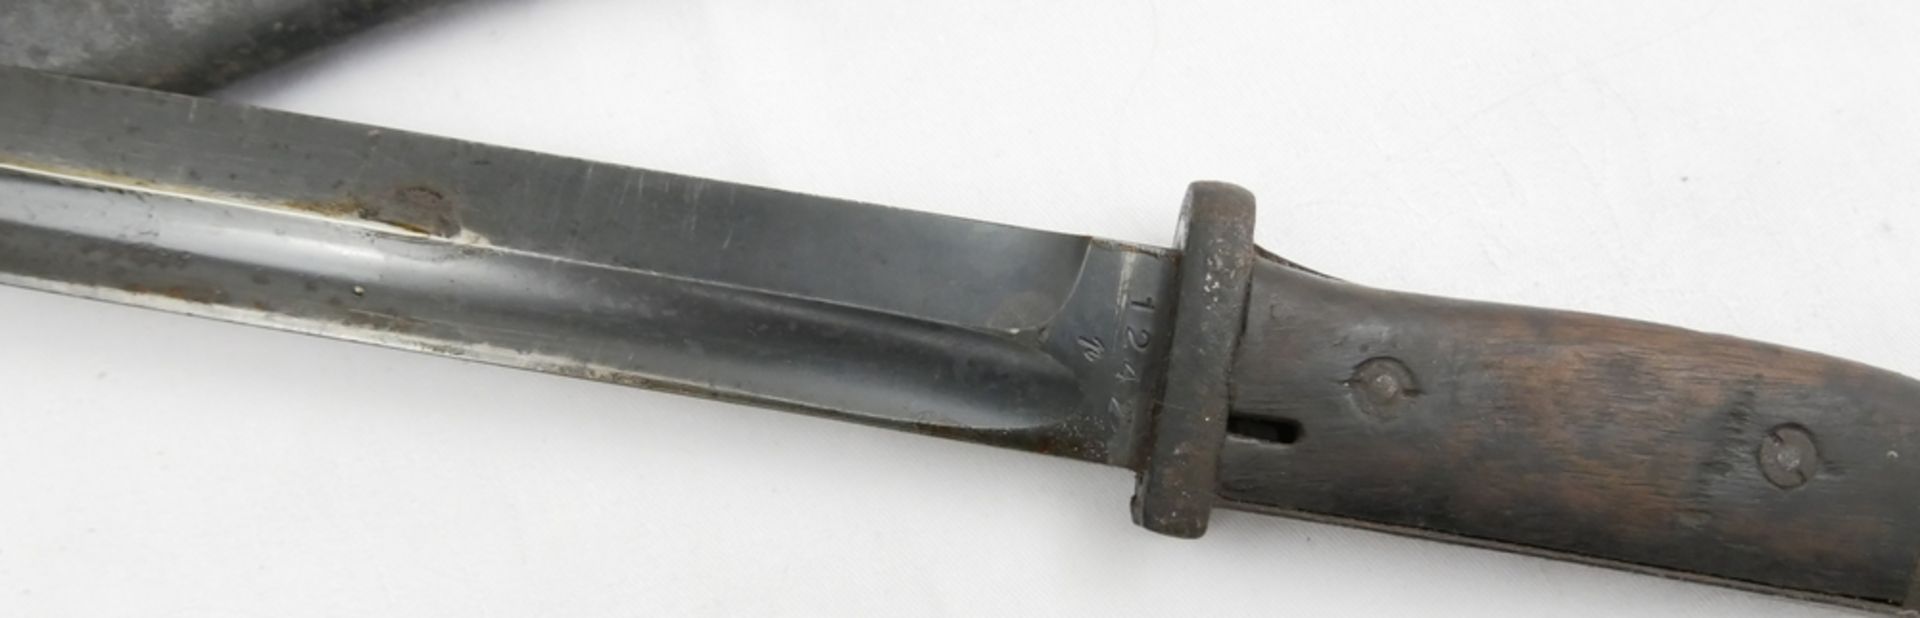 Ausgehbajonett K98 Fa. E. Hörster in Scheide. Gebrauchsspuren vorhanden. Klingenlänge ca. 25 cm, - Bild 2 aus 3